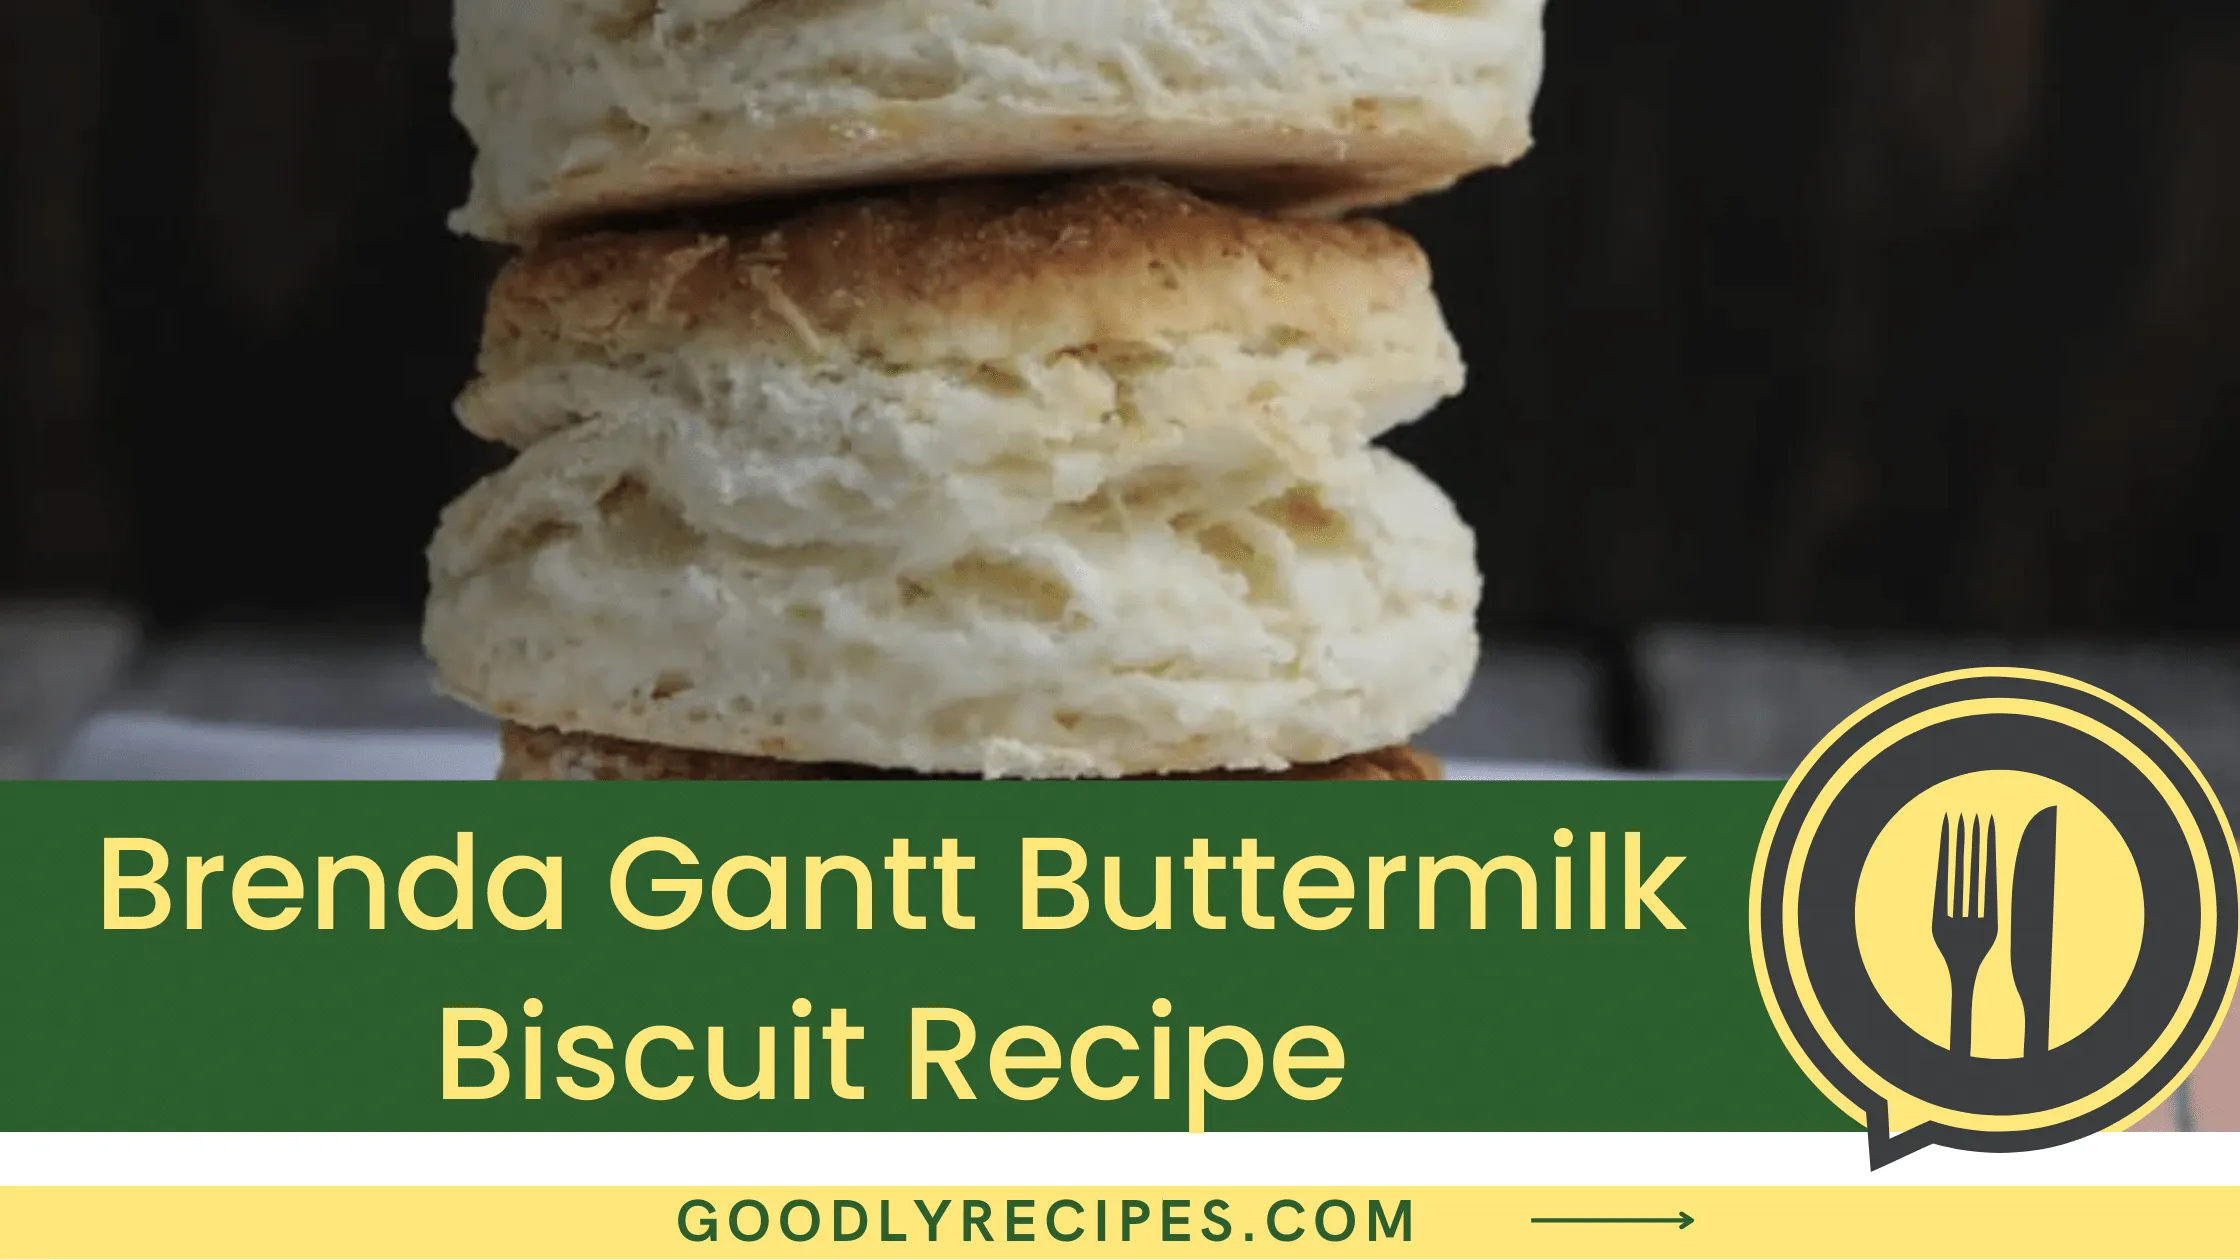 What is Brenda Gantt's Buttermilk Biscuit?